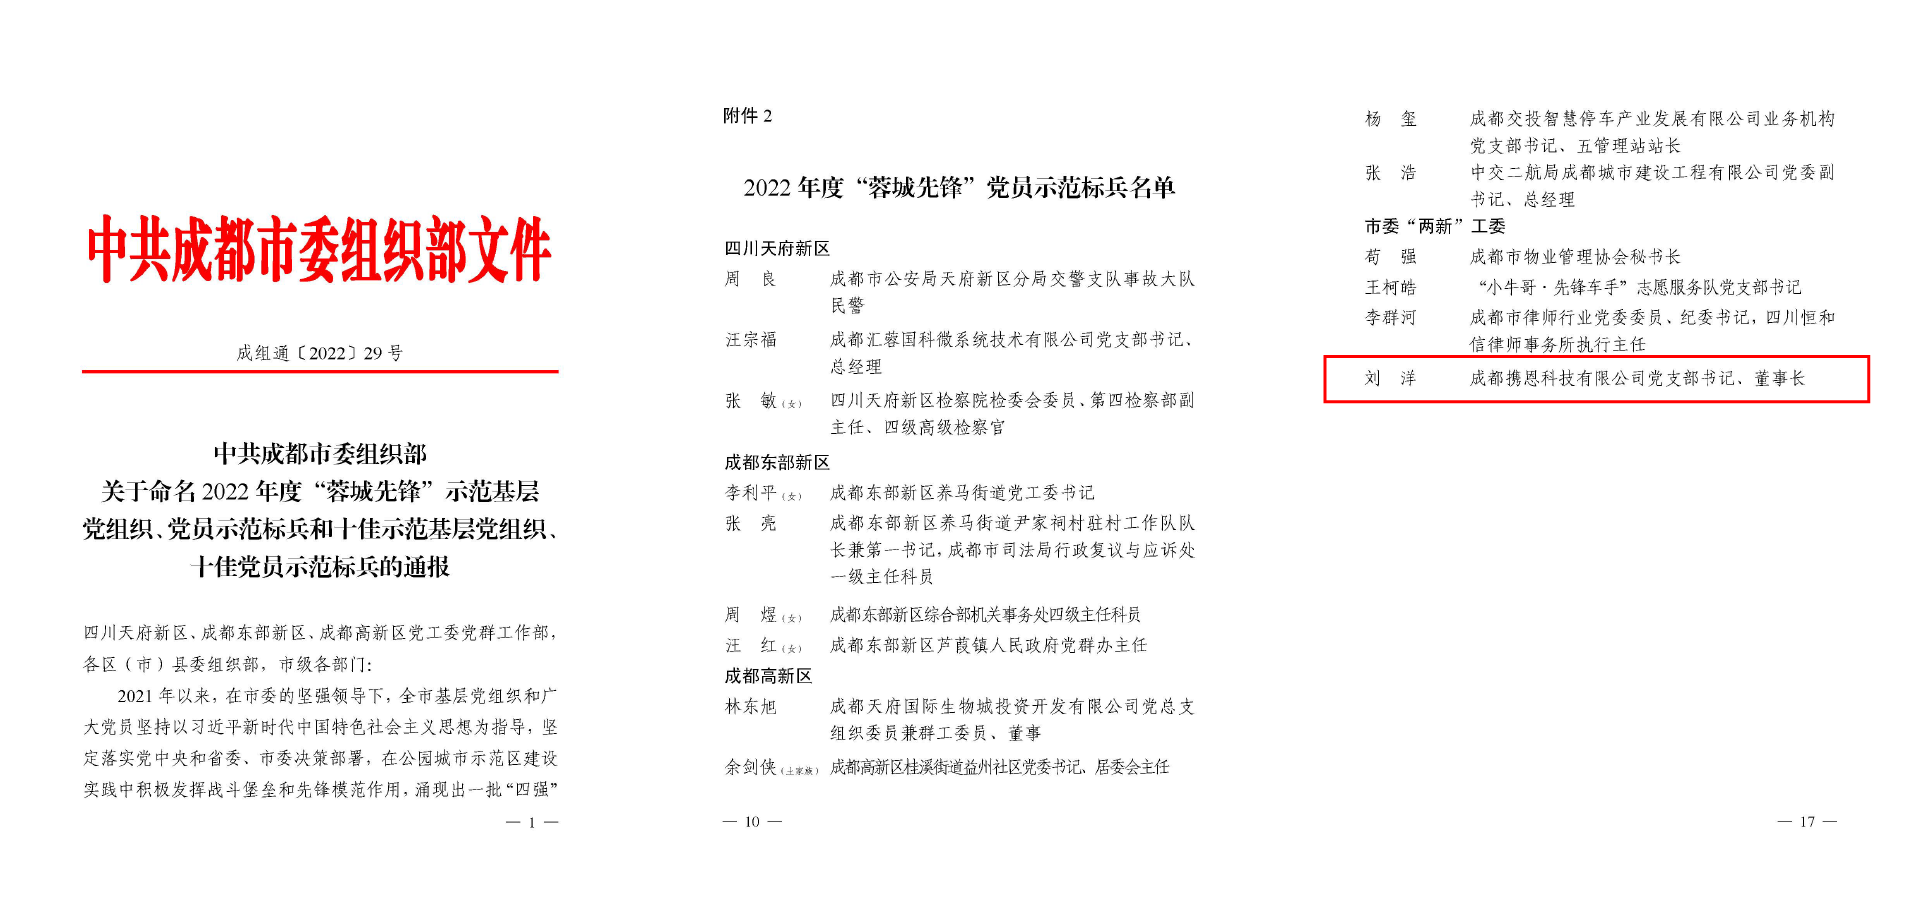 图 刘洋荣获2022年度“蓉城先锋”党员示范标兵荣誉称号.png